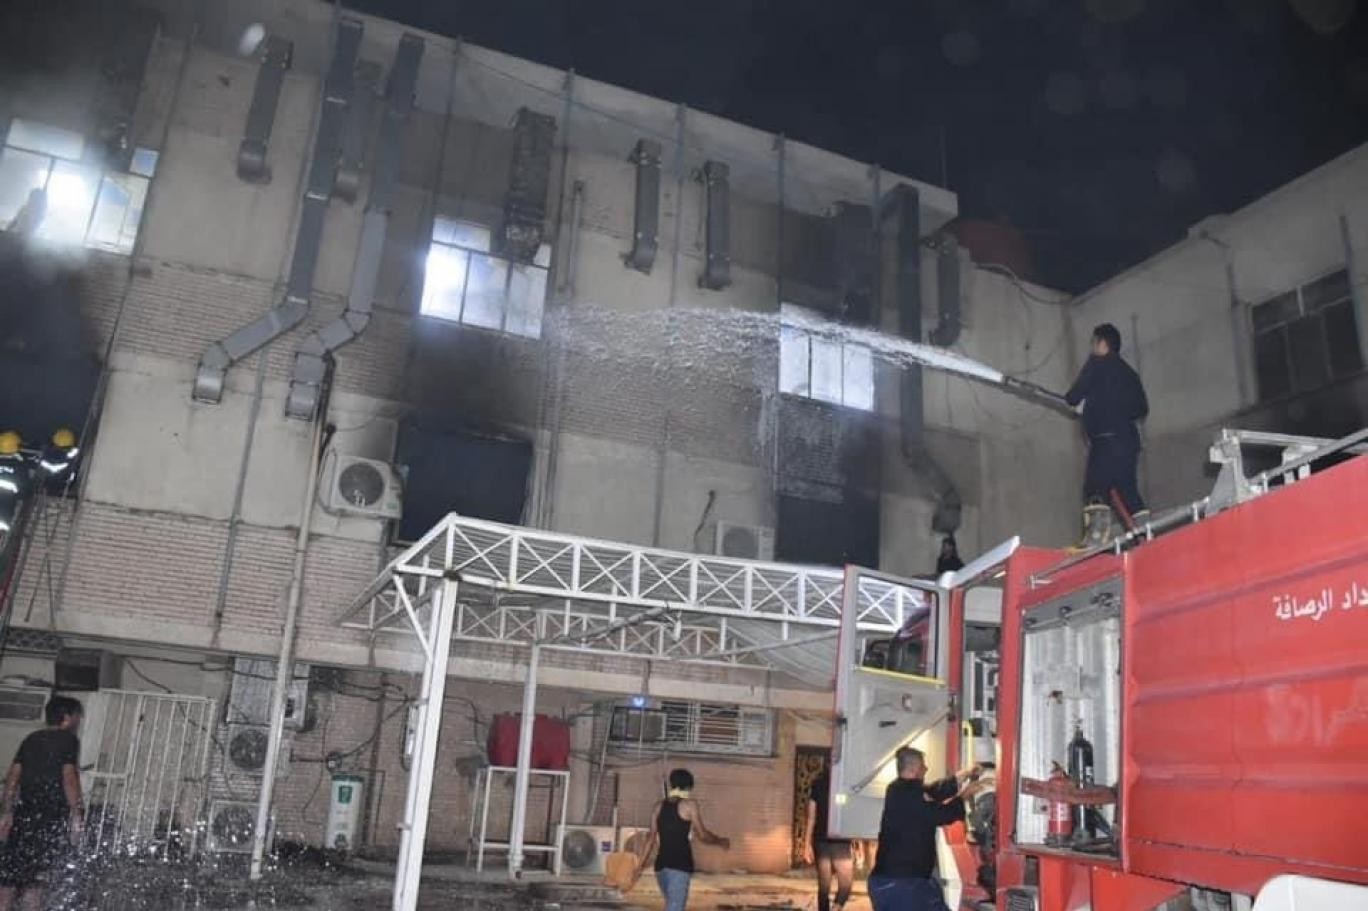 انفجار اسطوانات الأوكسجين بمستشفى فى العراق